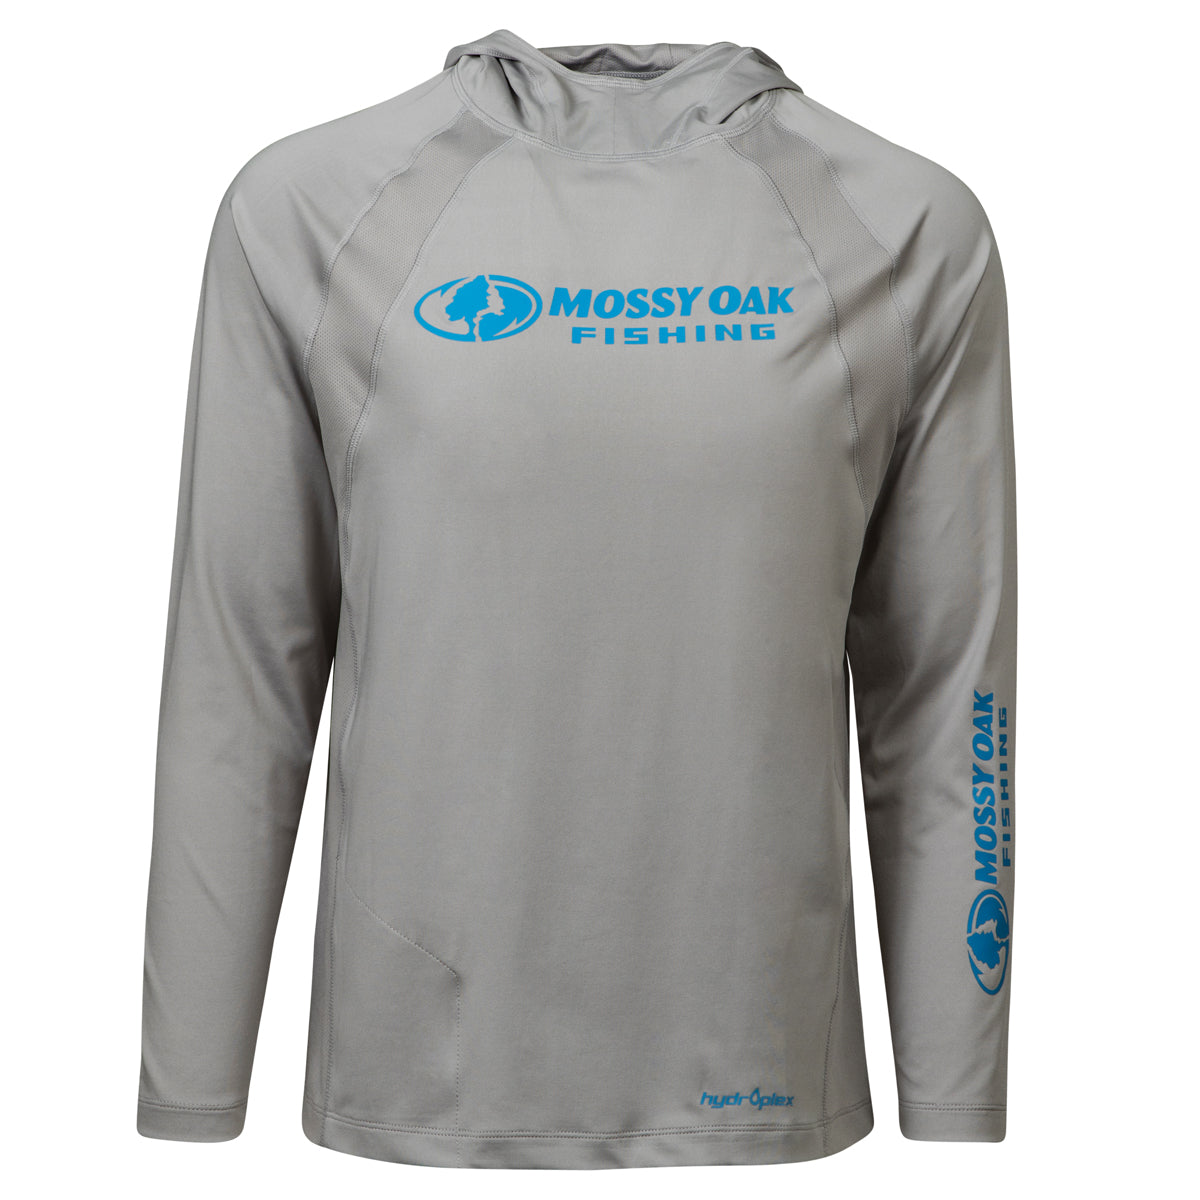 Mossy Oak Long Sleeve Fishing Tech Hoodie